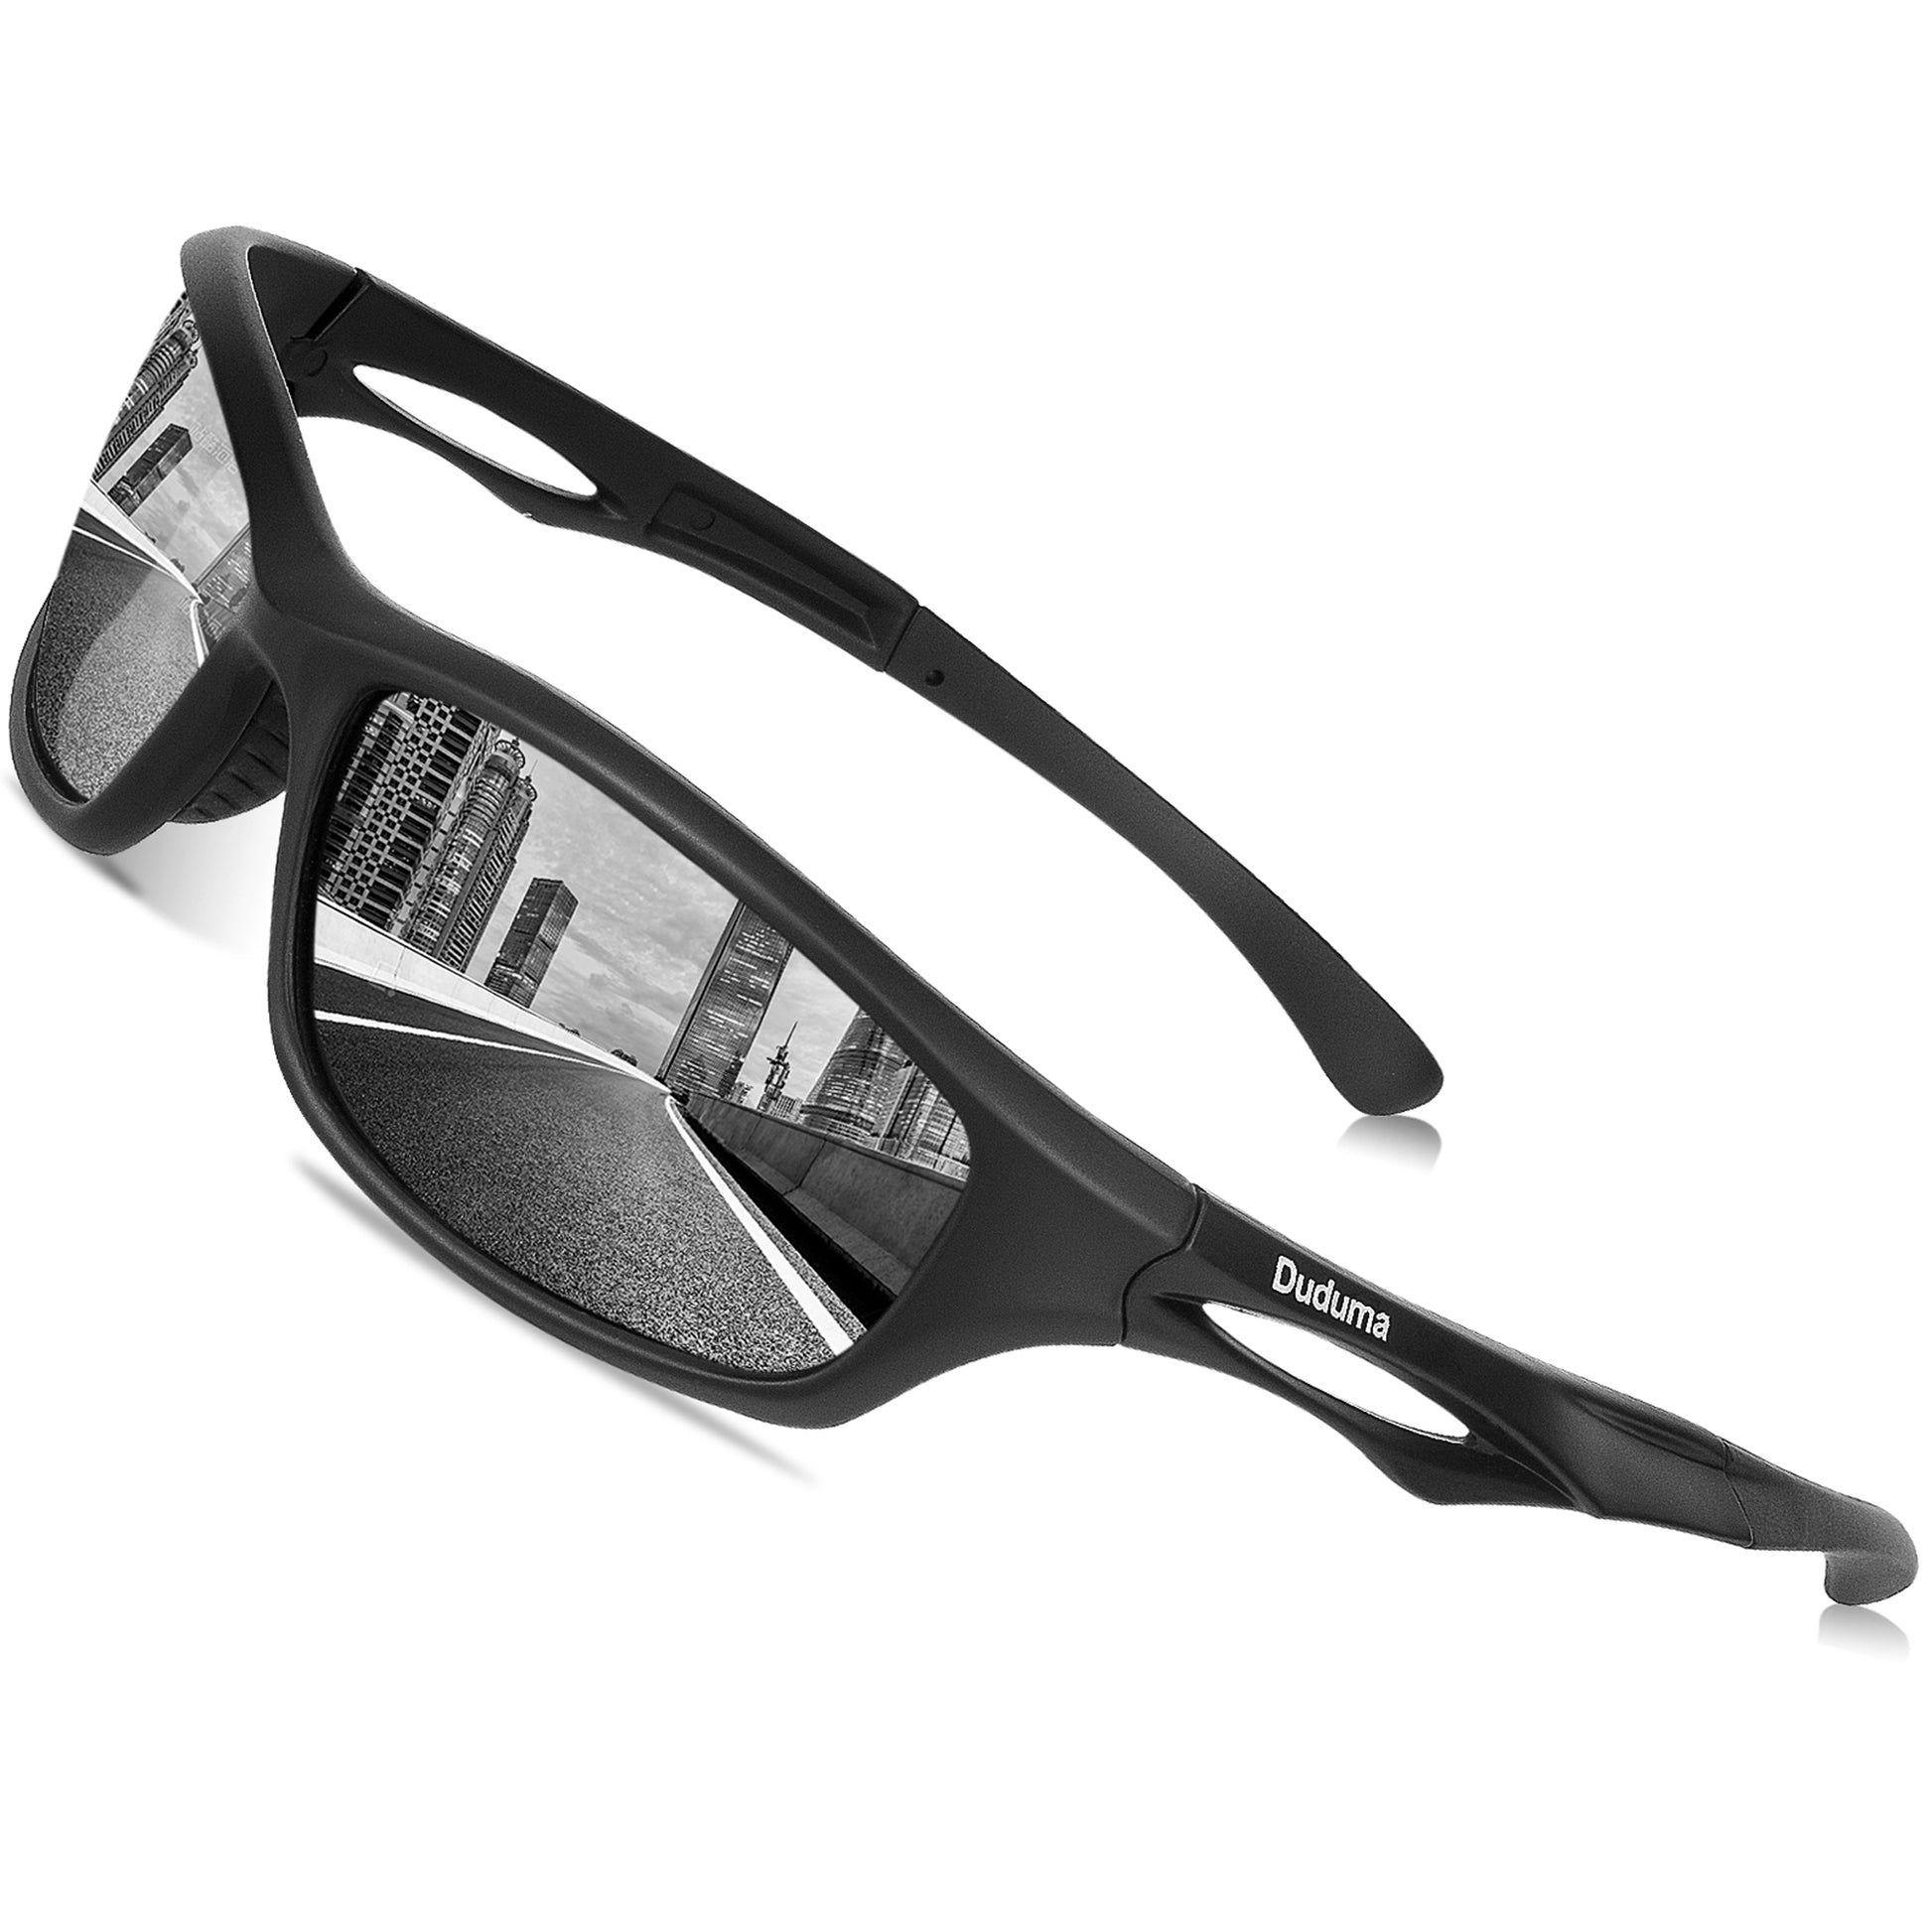  Sunglasses - Duduma / Sunglasses / Sports & Outdoor